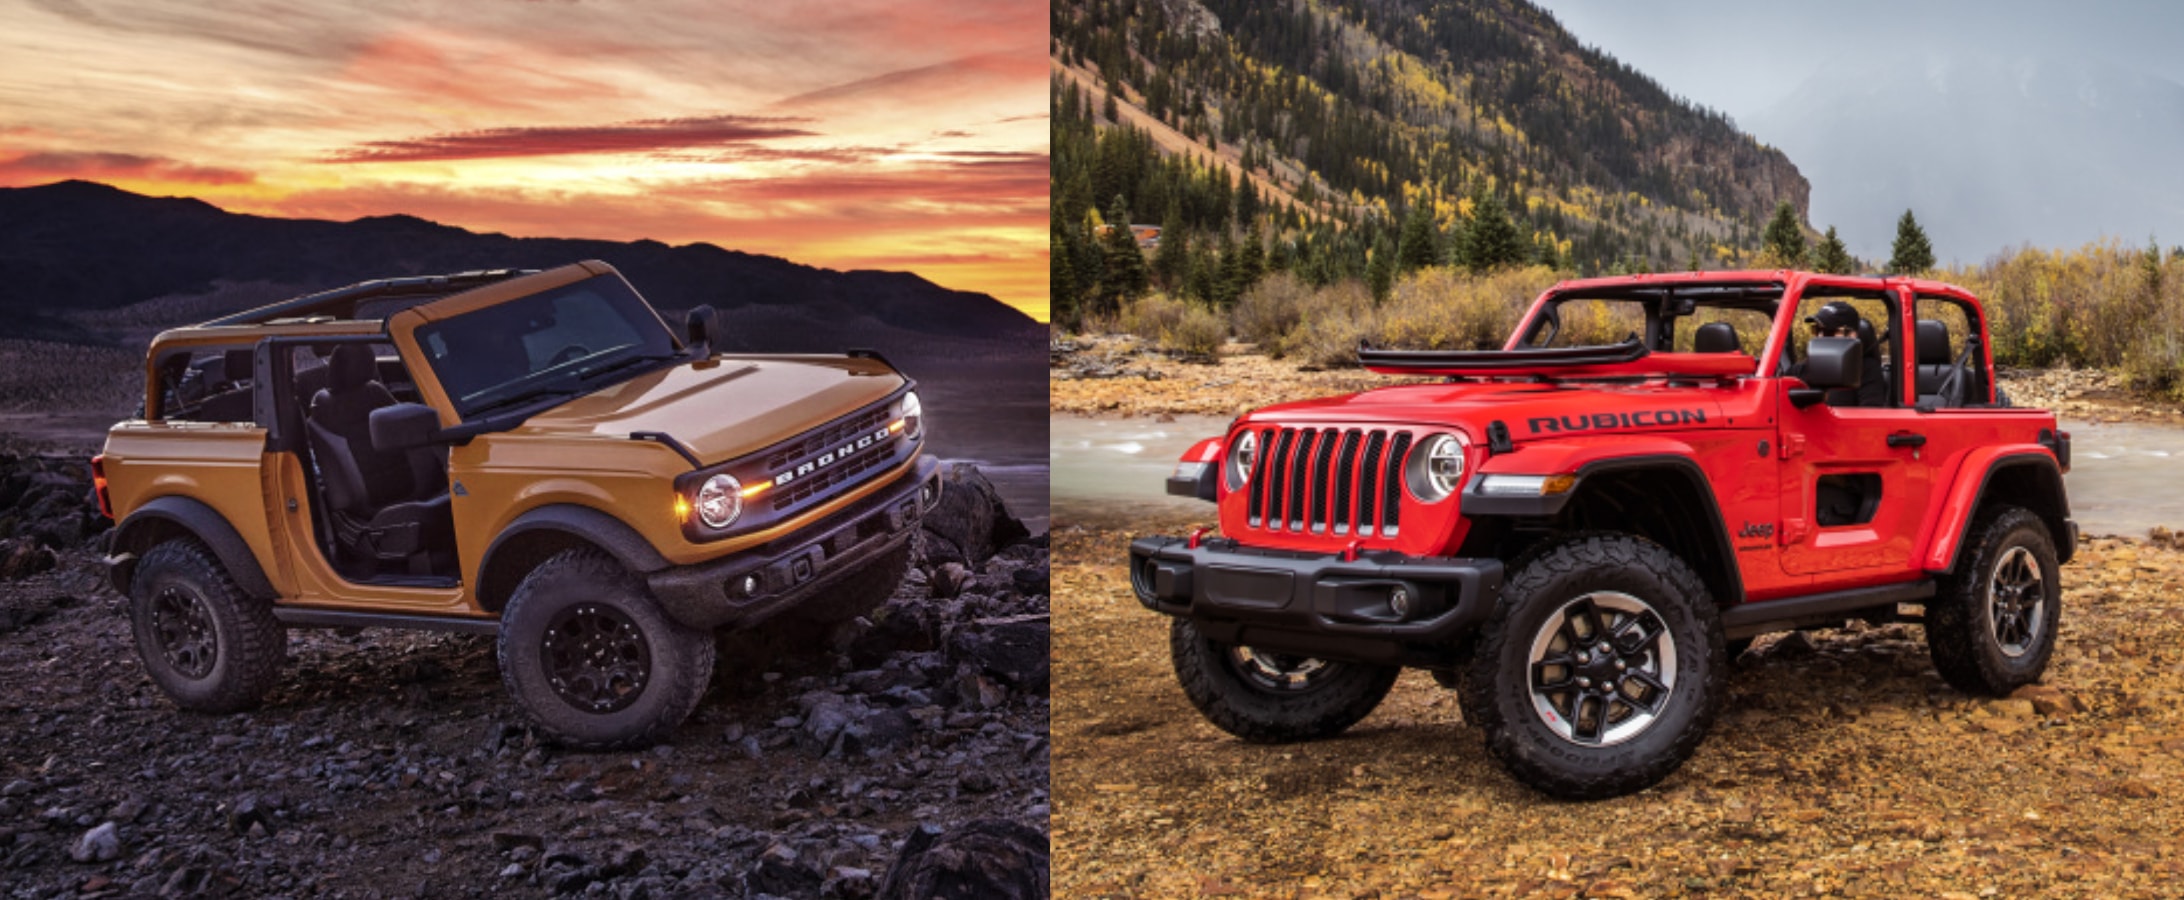 2021 ford bronco vs. jeep wrangler comparison: which one